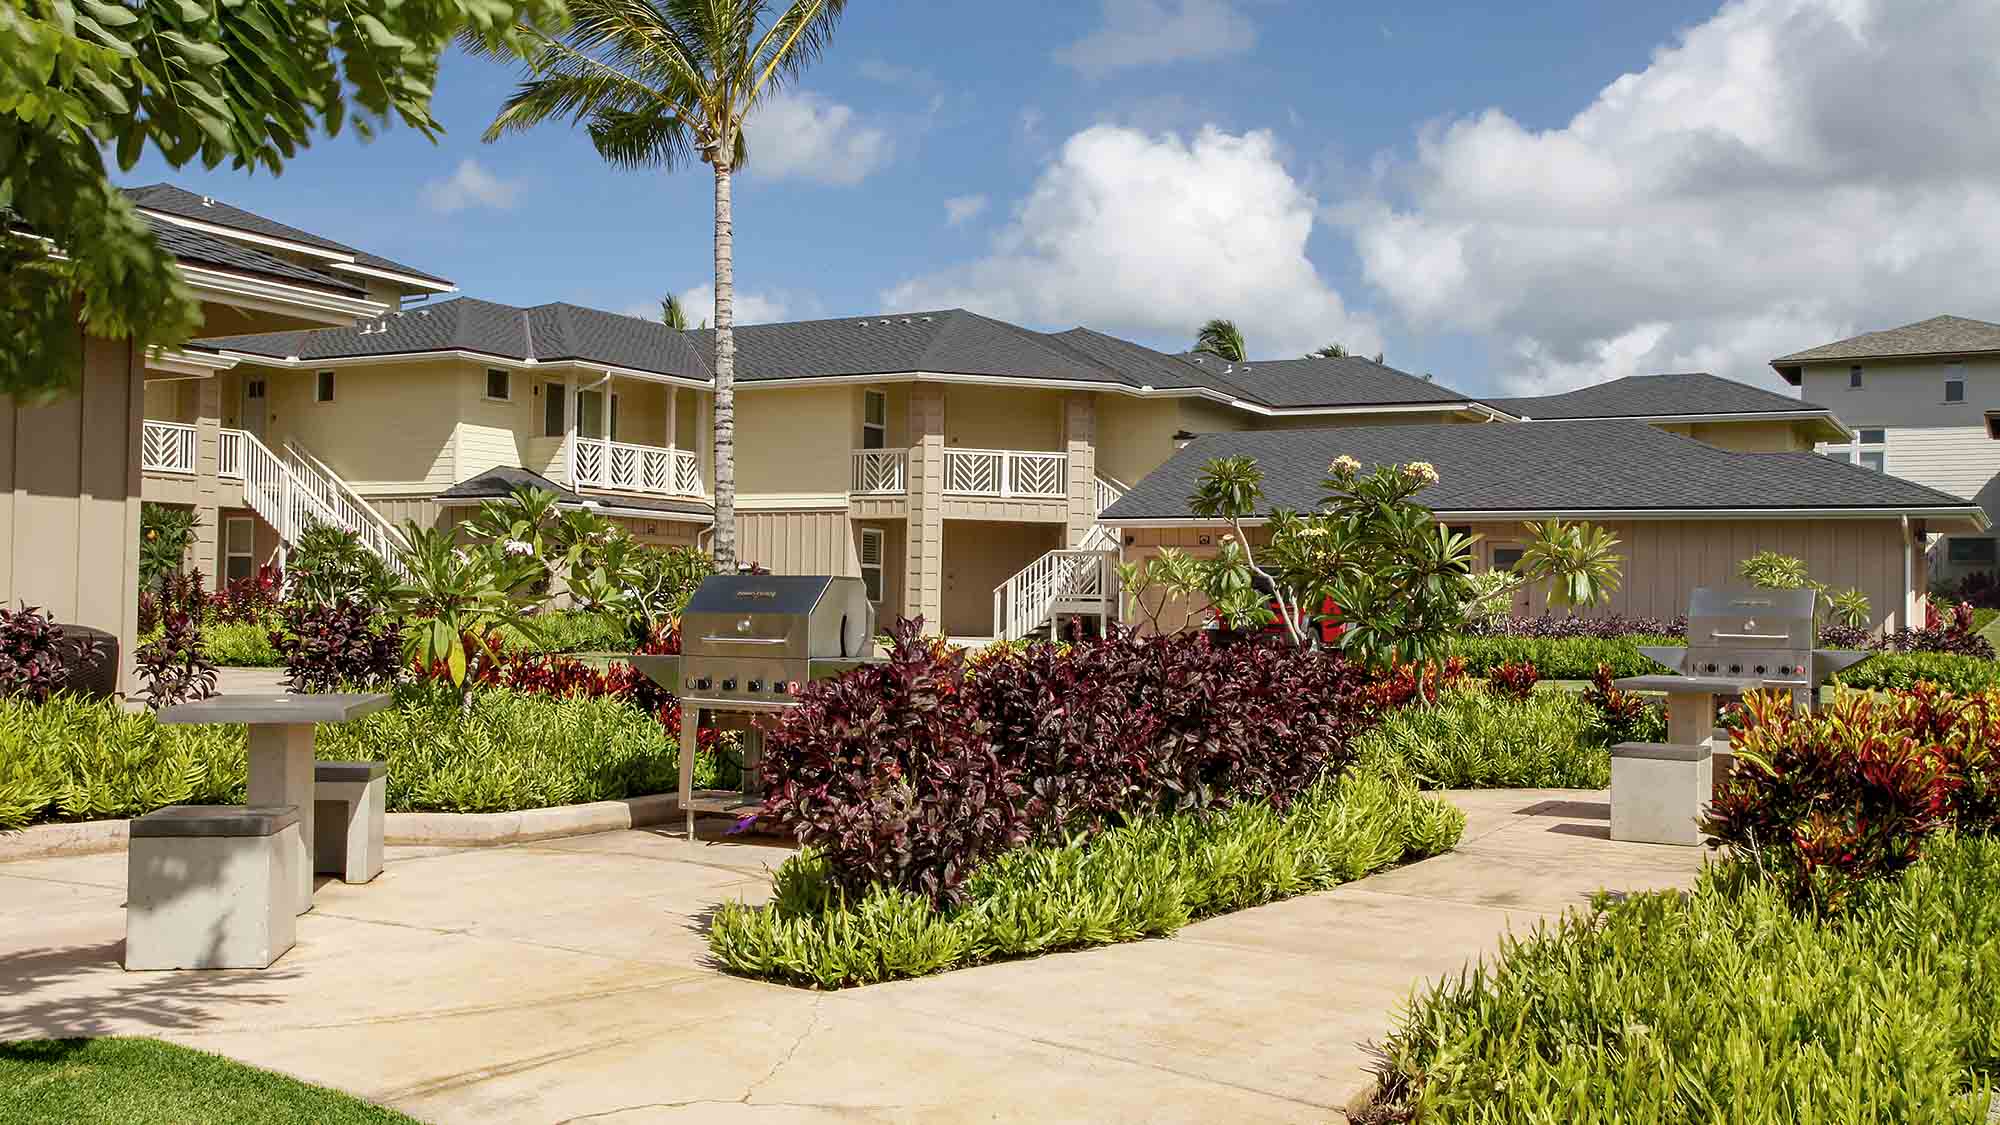 Pili Mai Resort at Poipu 1 - Parrish Kauai